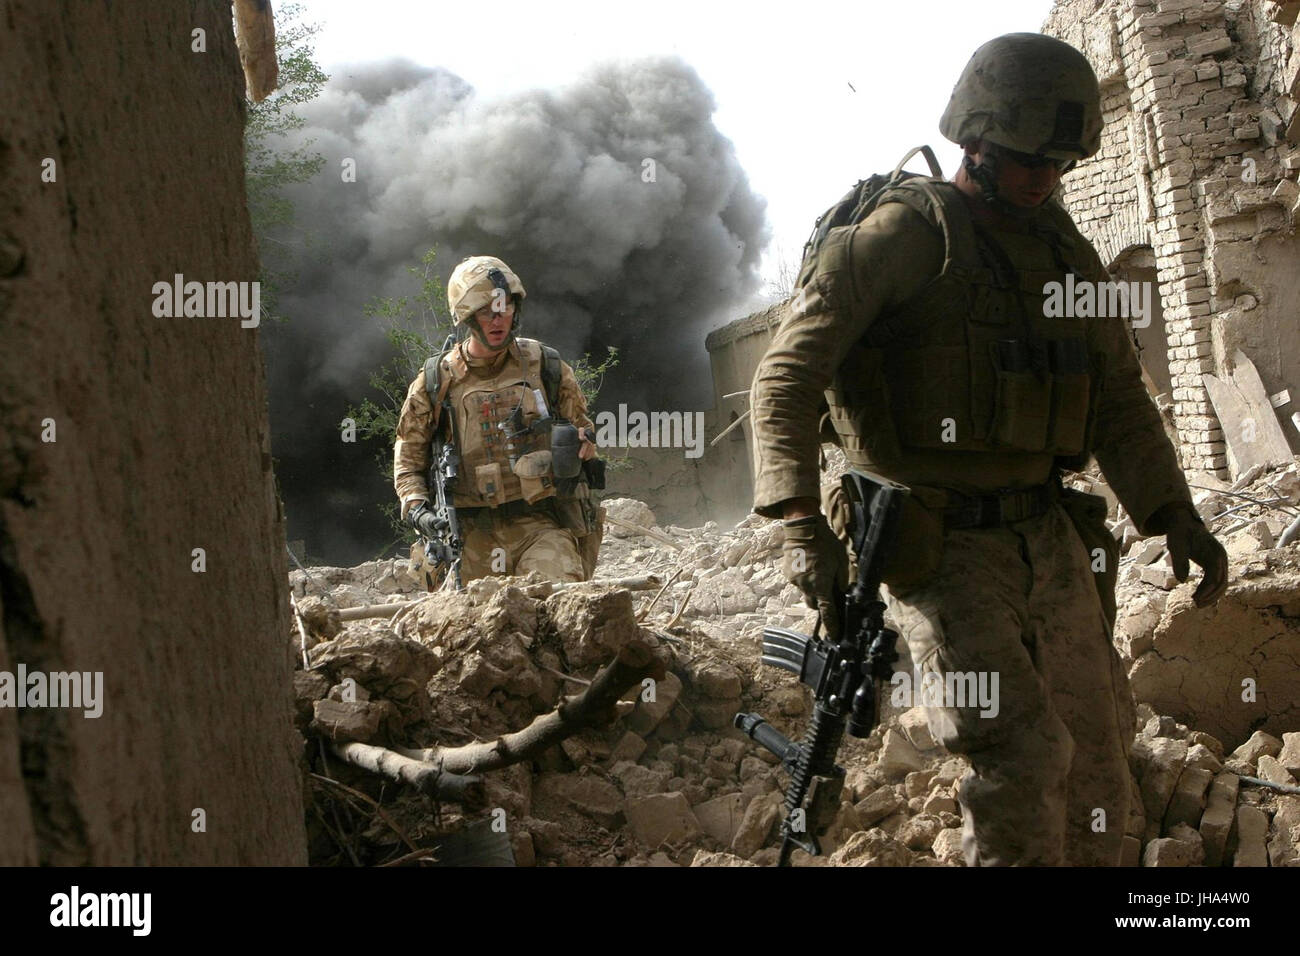 Stati Uniti e soldati estoni a piedi su macerie come una detonazione controllata esplode dietro di loro Ottobre 26, 2008 Ora Zad, Afghanistan. (Foto di Freddy G. Cantu via Planetpix) Foto Stock